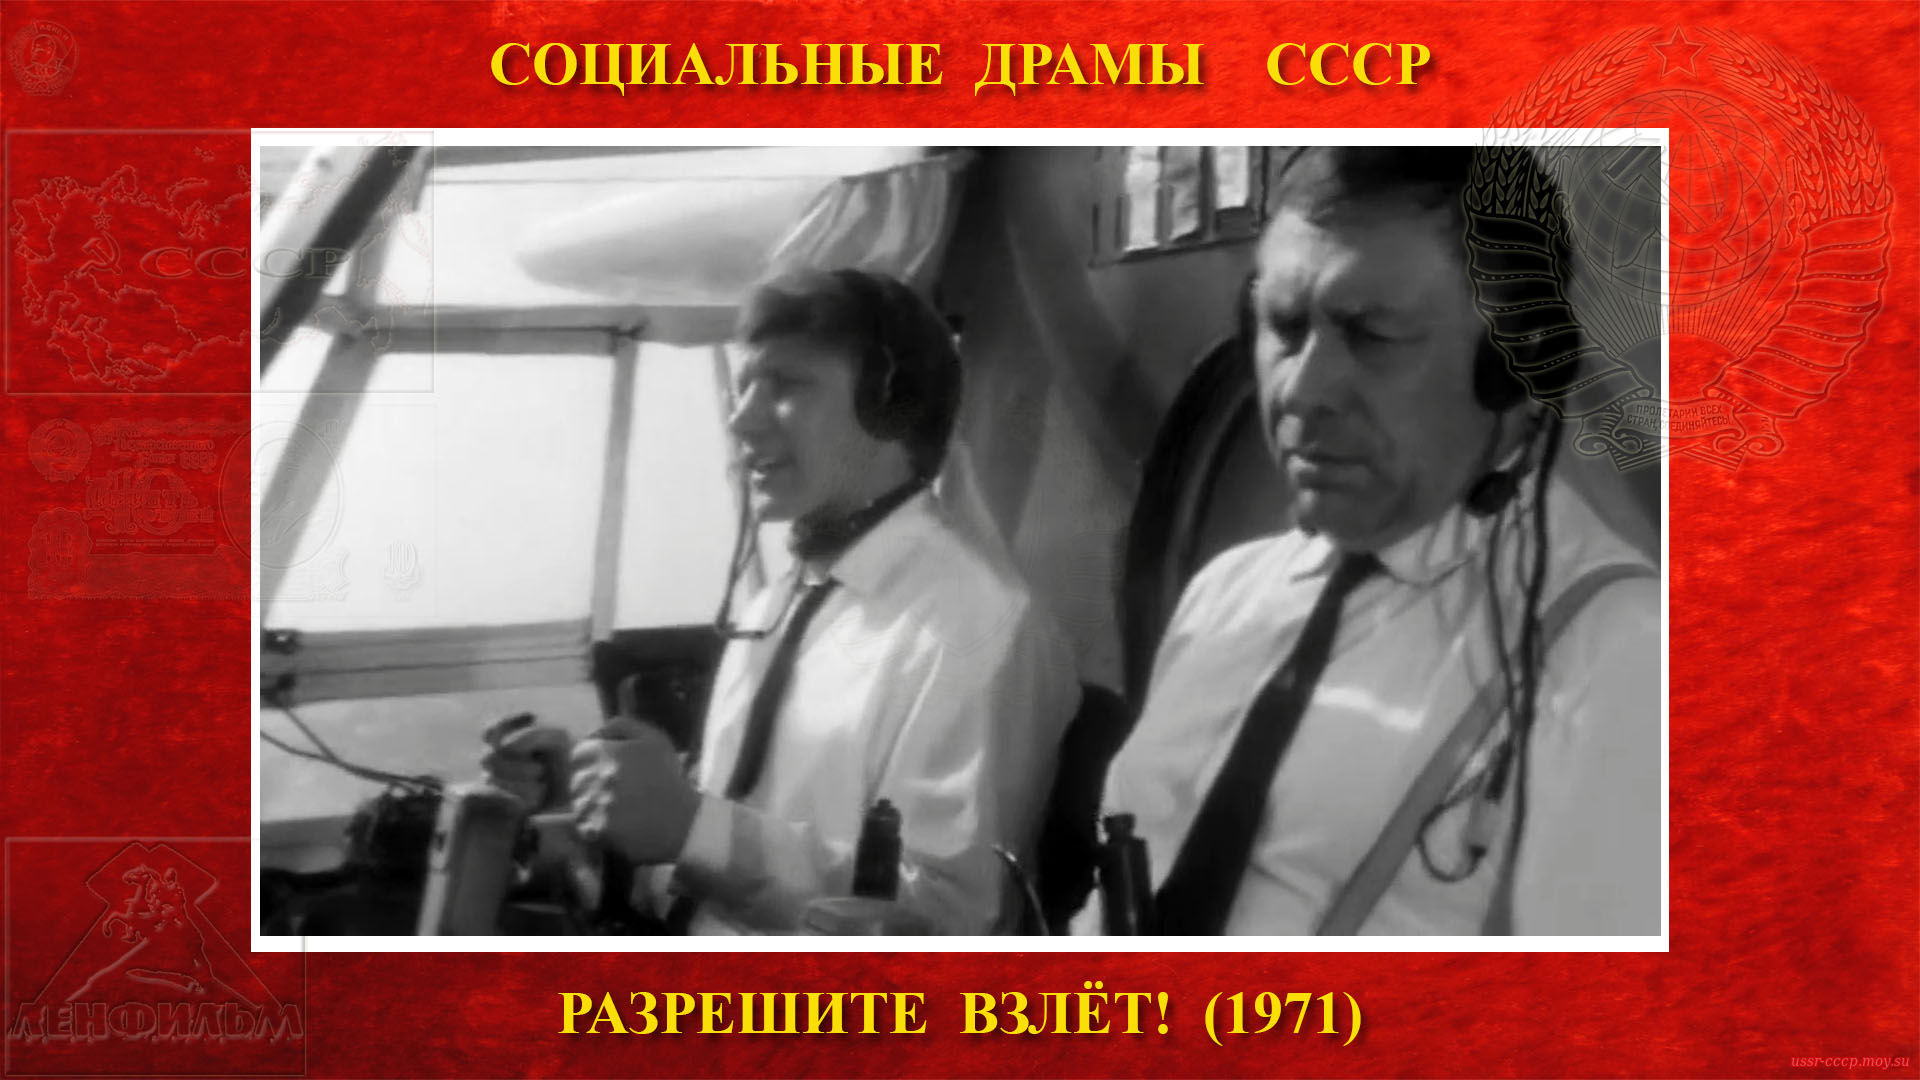 Разрешите ВЗЛЁТ! — и он отправился в полёт за пассажирами со своим вторым пилотам Соломенцевым. 